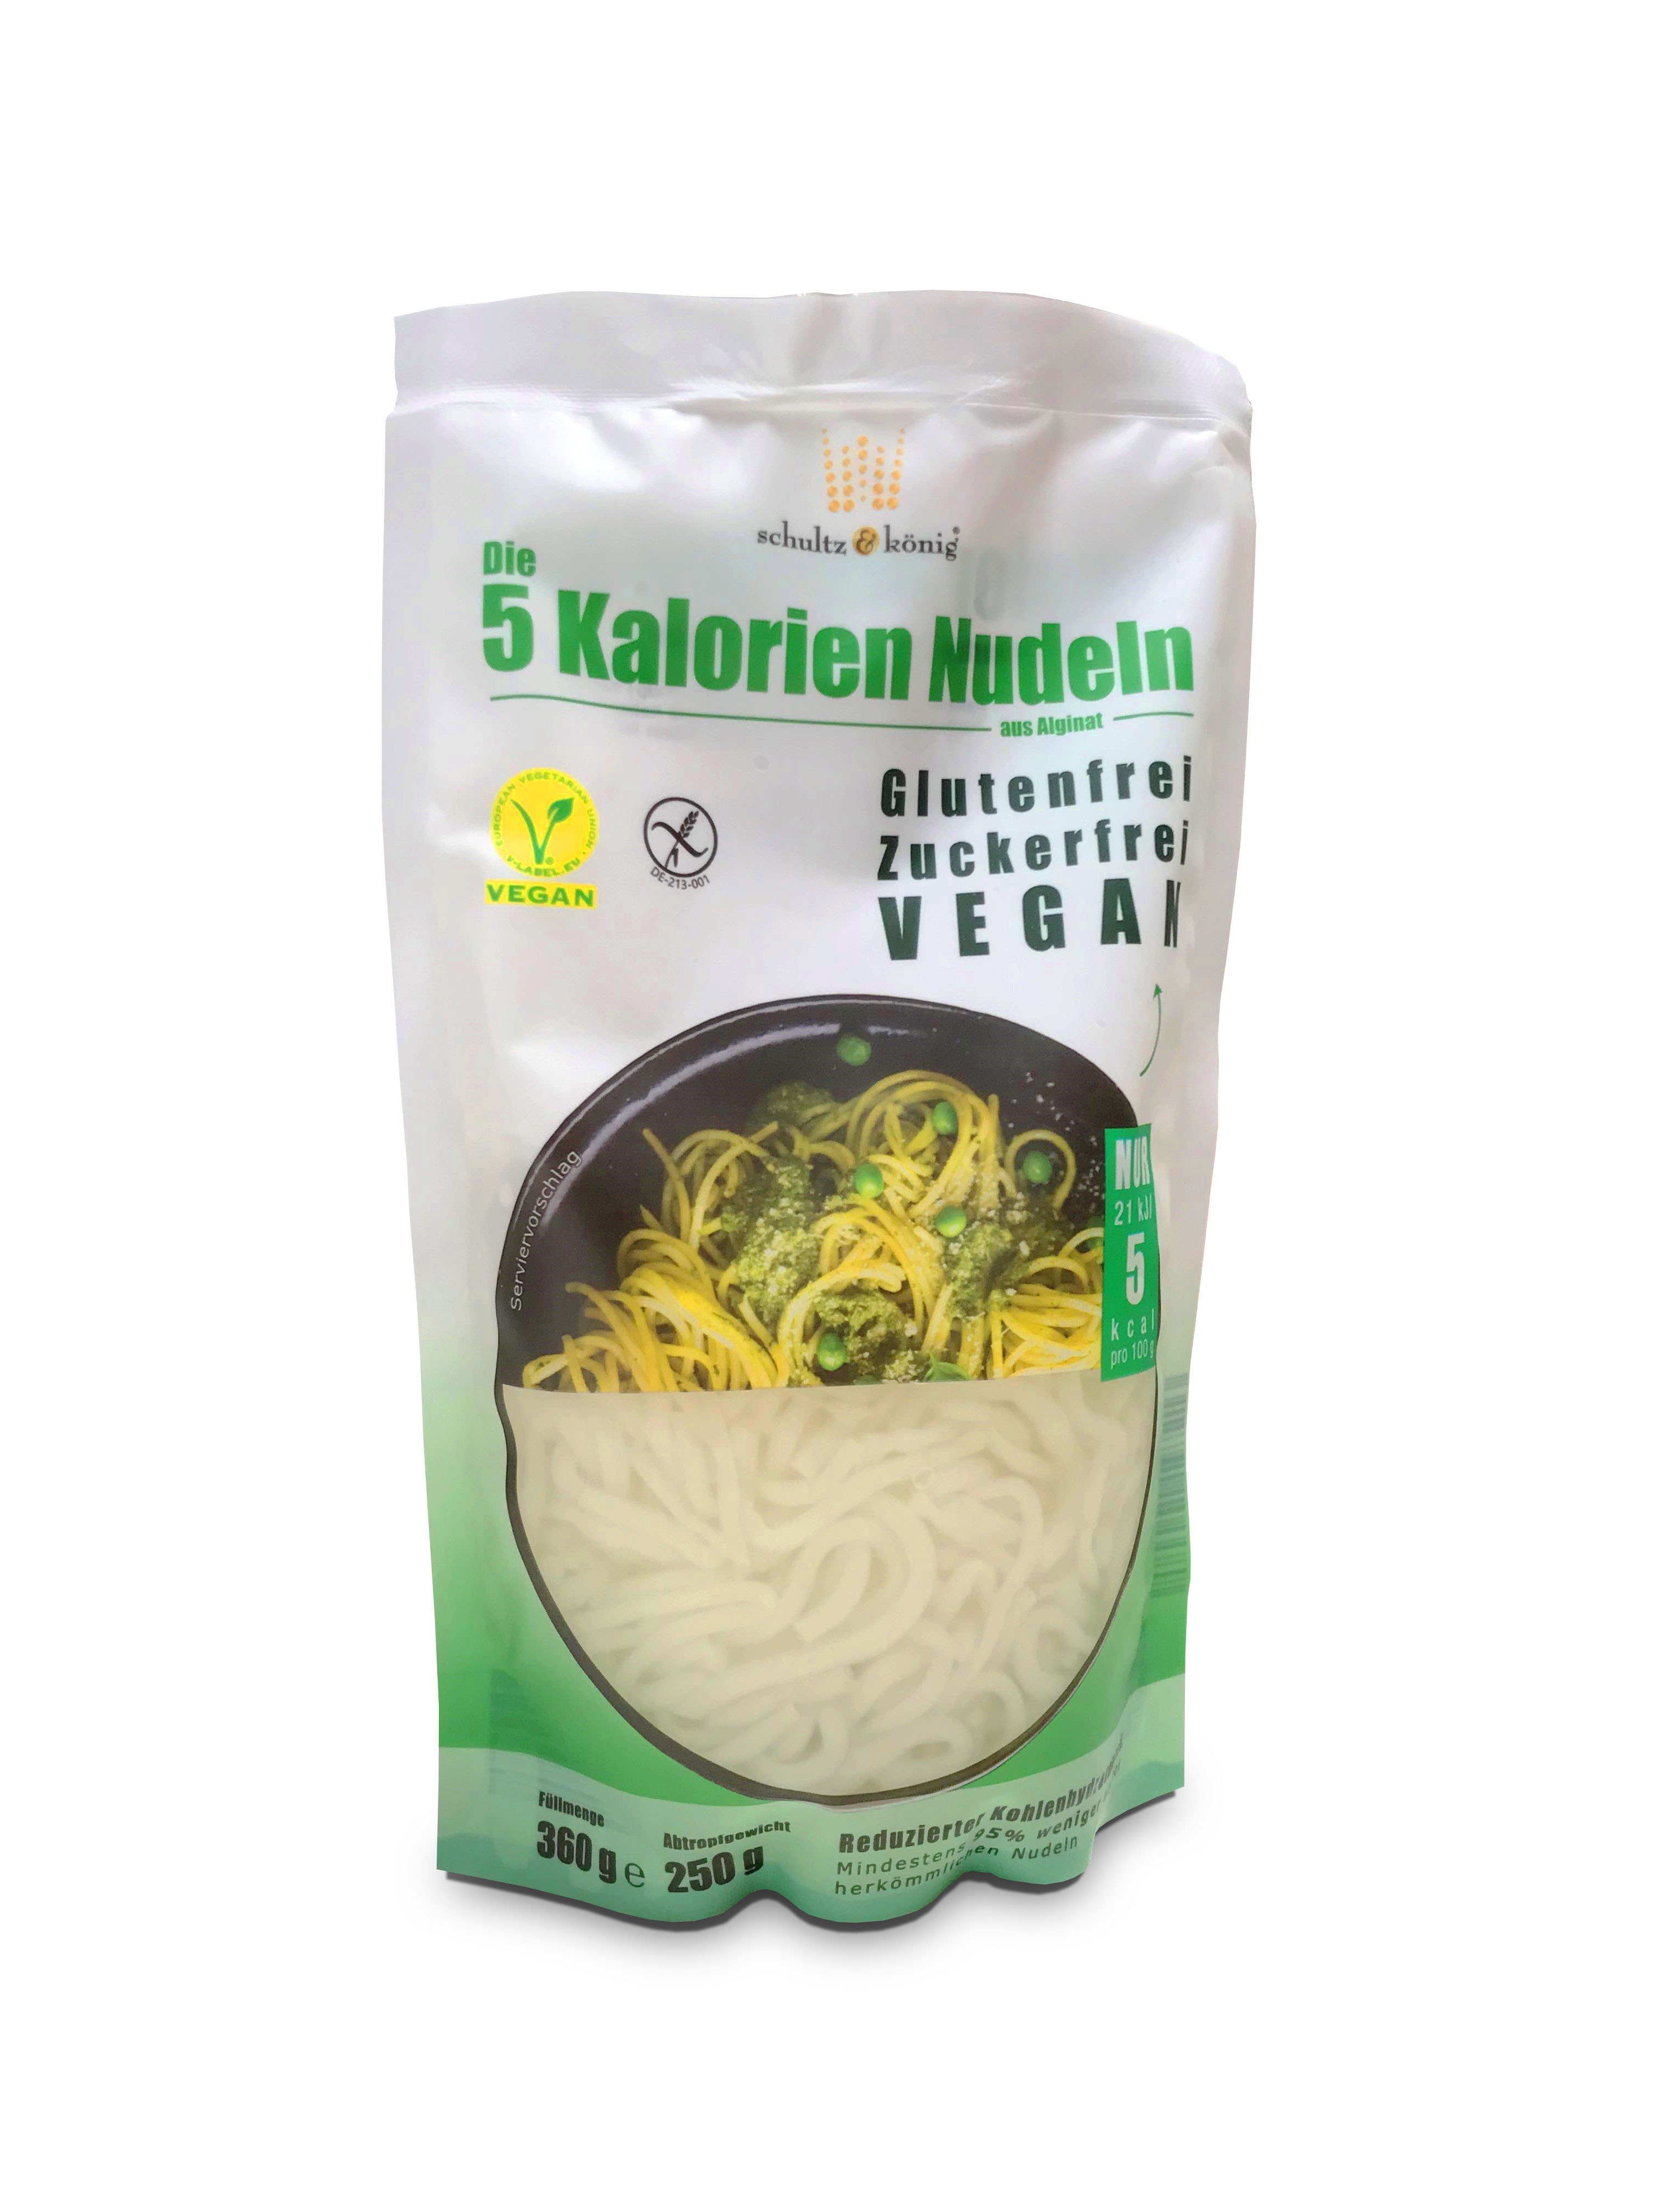 Noedels (pasta) kelp gemaakt van (kelp), zijn vrij van vet, suiker en gluten en hebben slechts 5 kcal per 100 g.